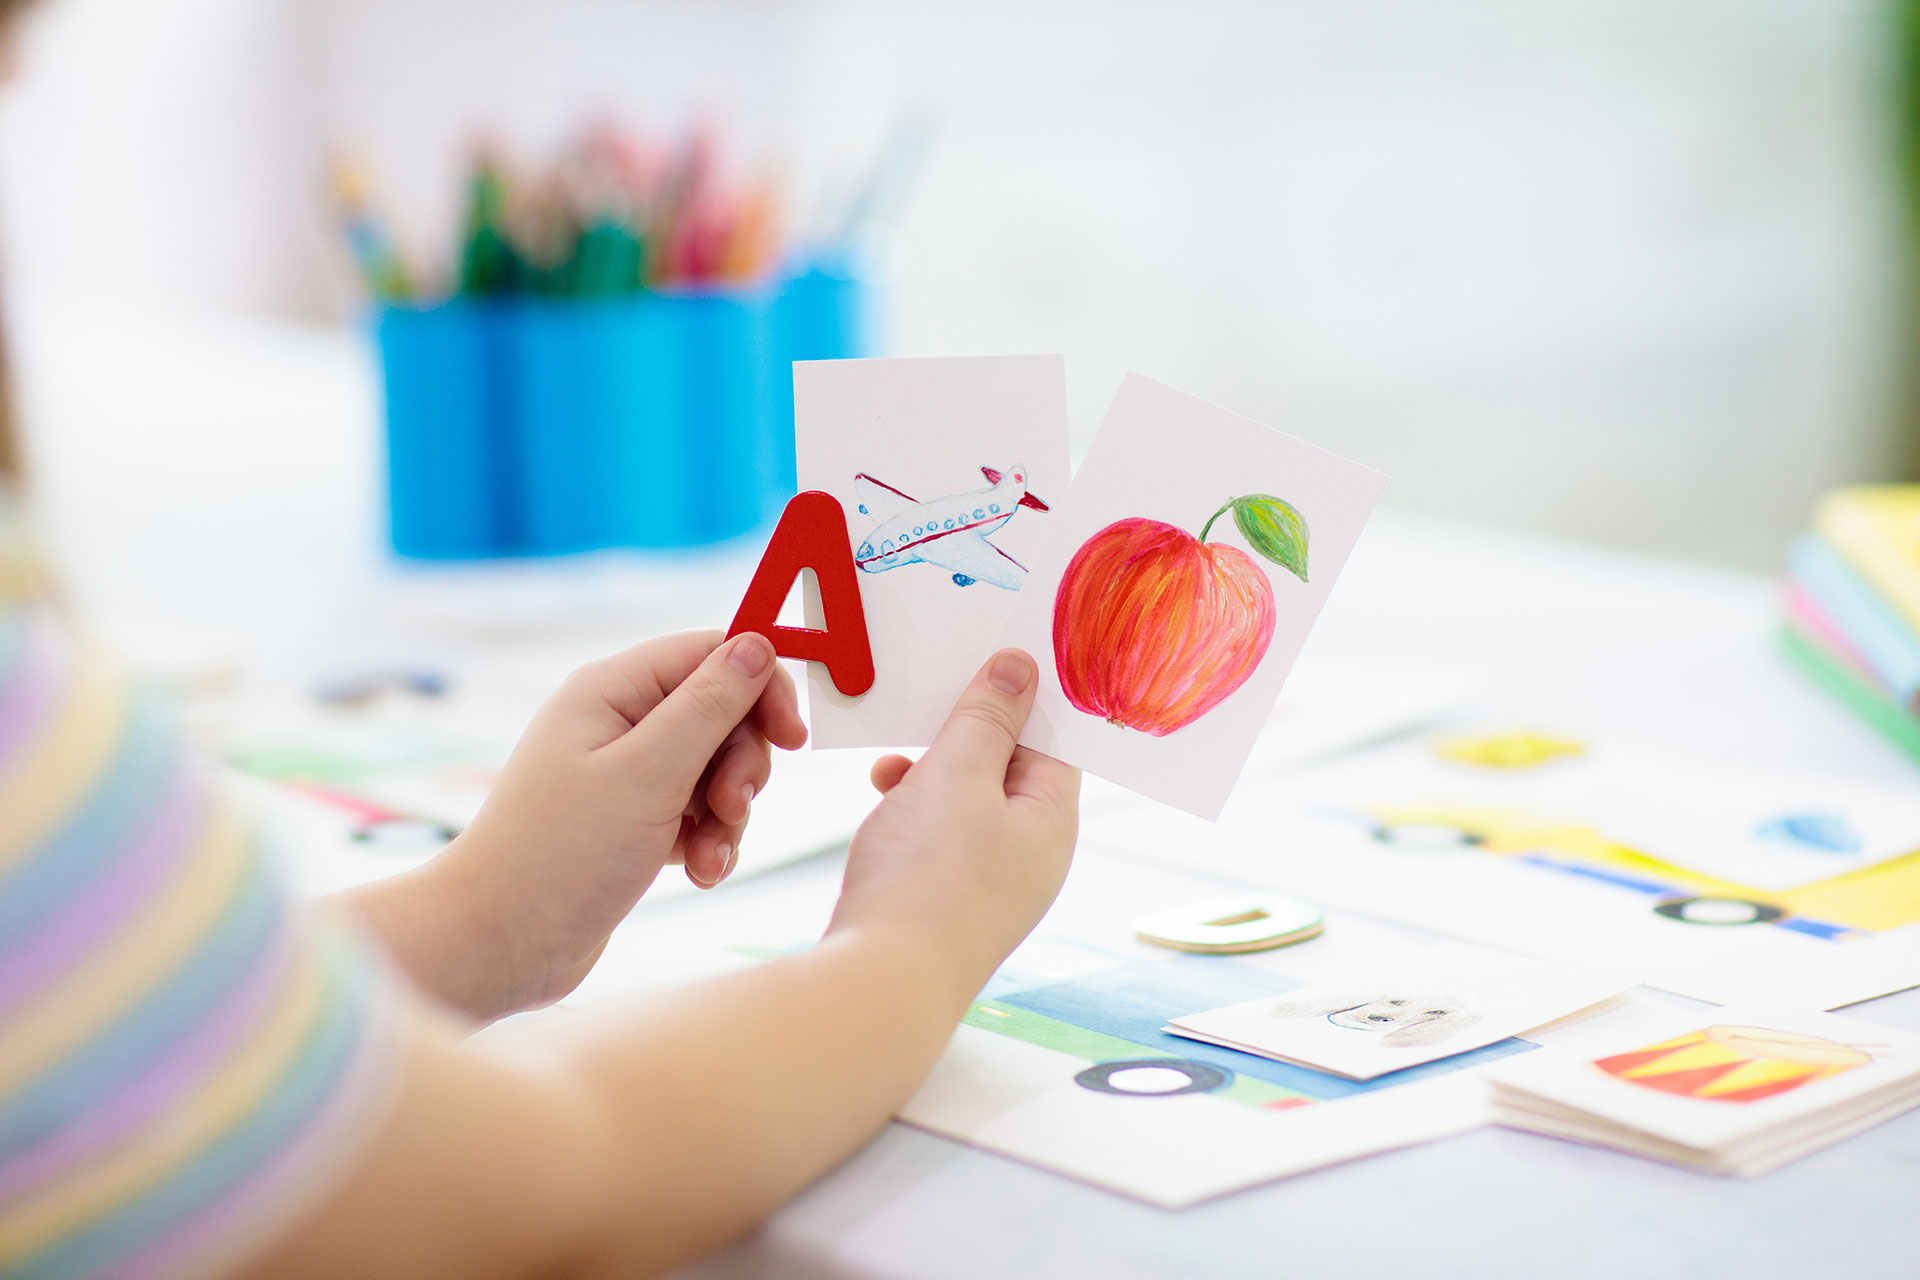 barn håller bild av äpple och bokstaven A i händerna vid ett bord med pennor och ritpapper